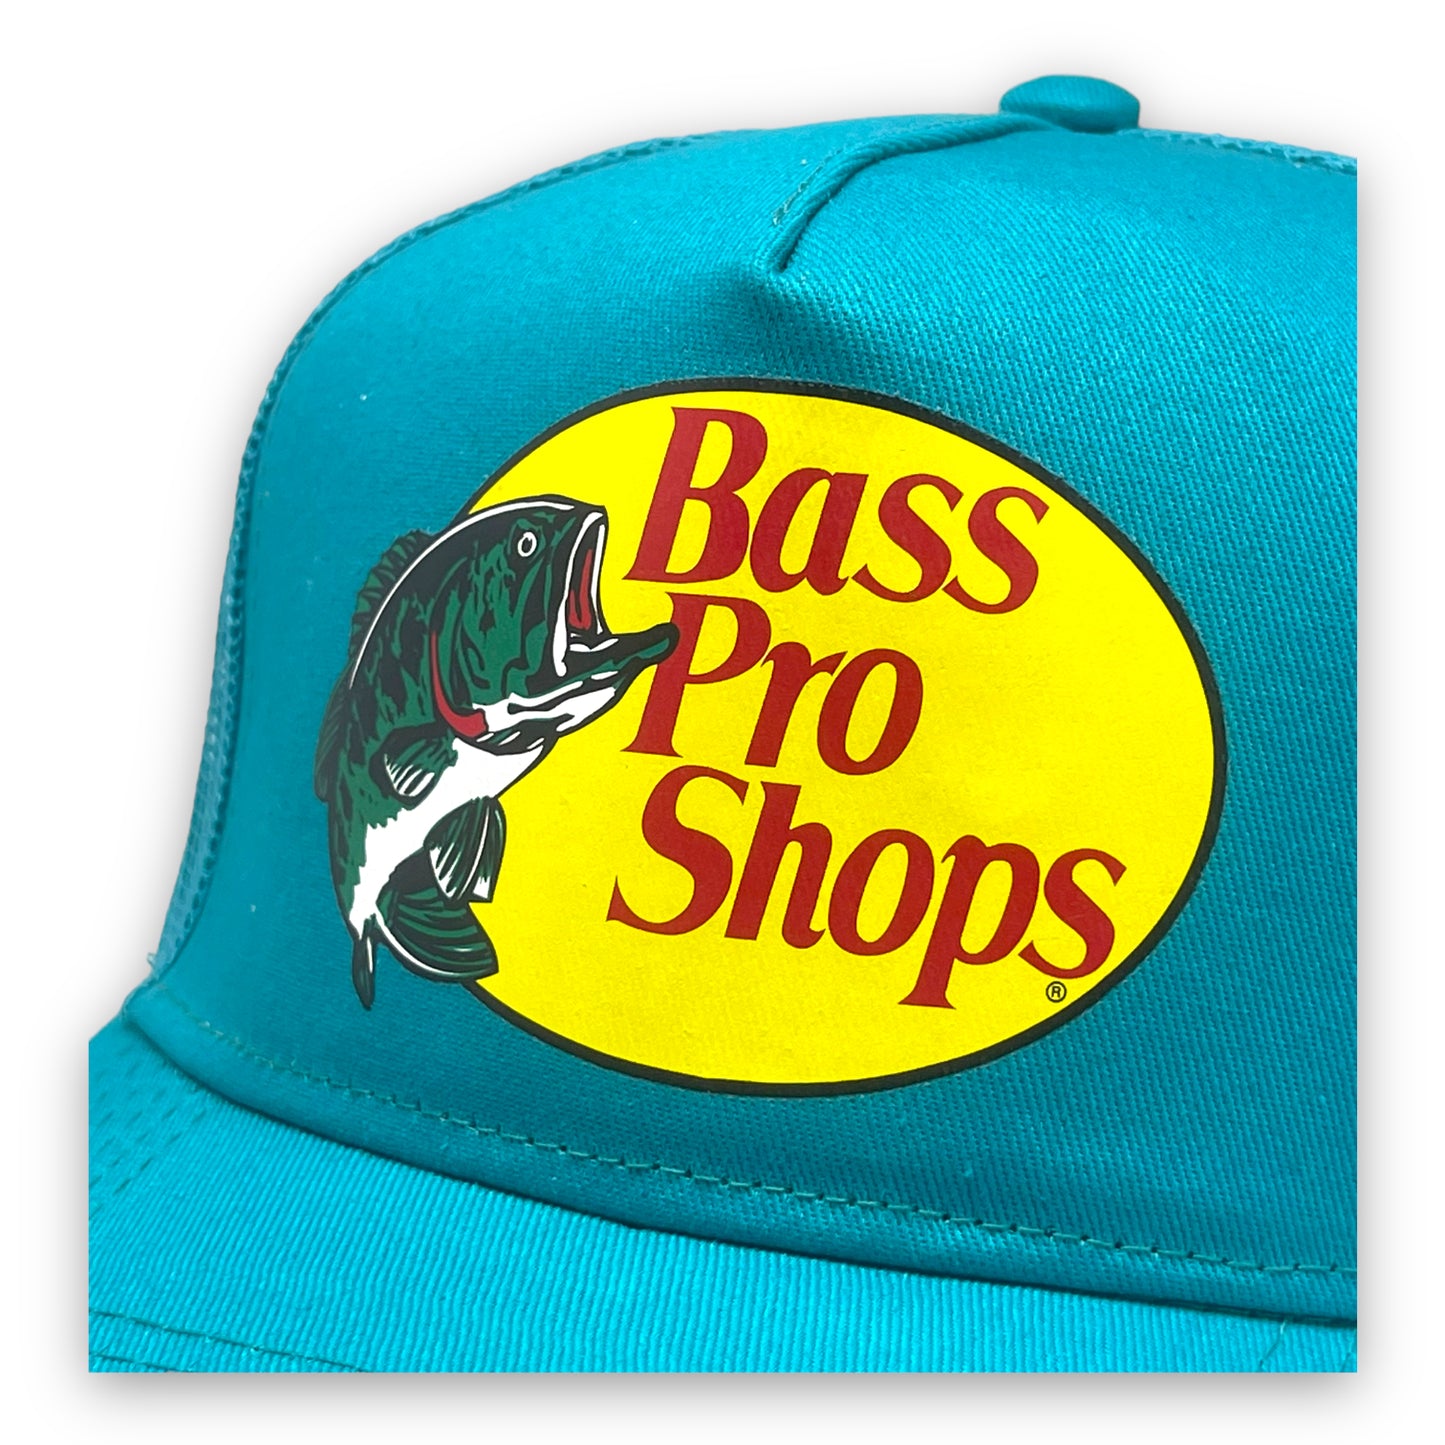 Gorra Bass Pro Shops Aqua